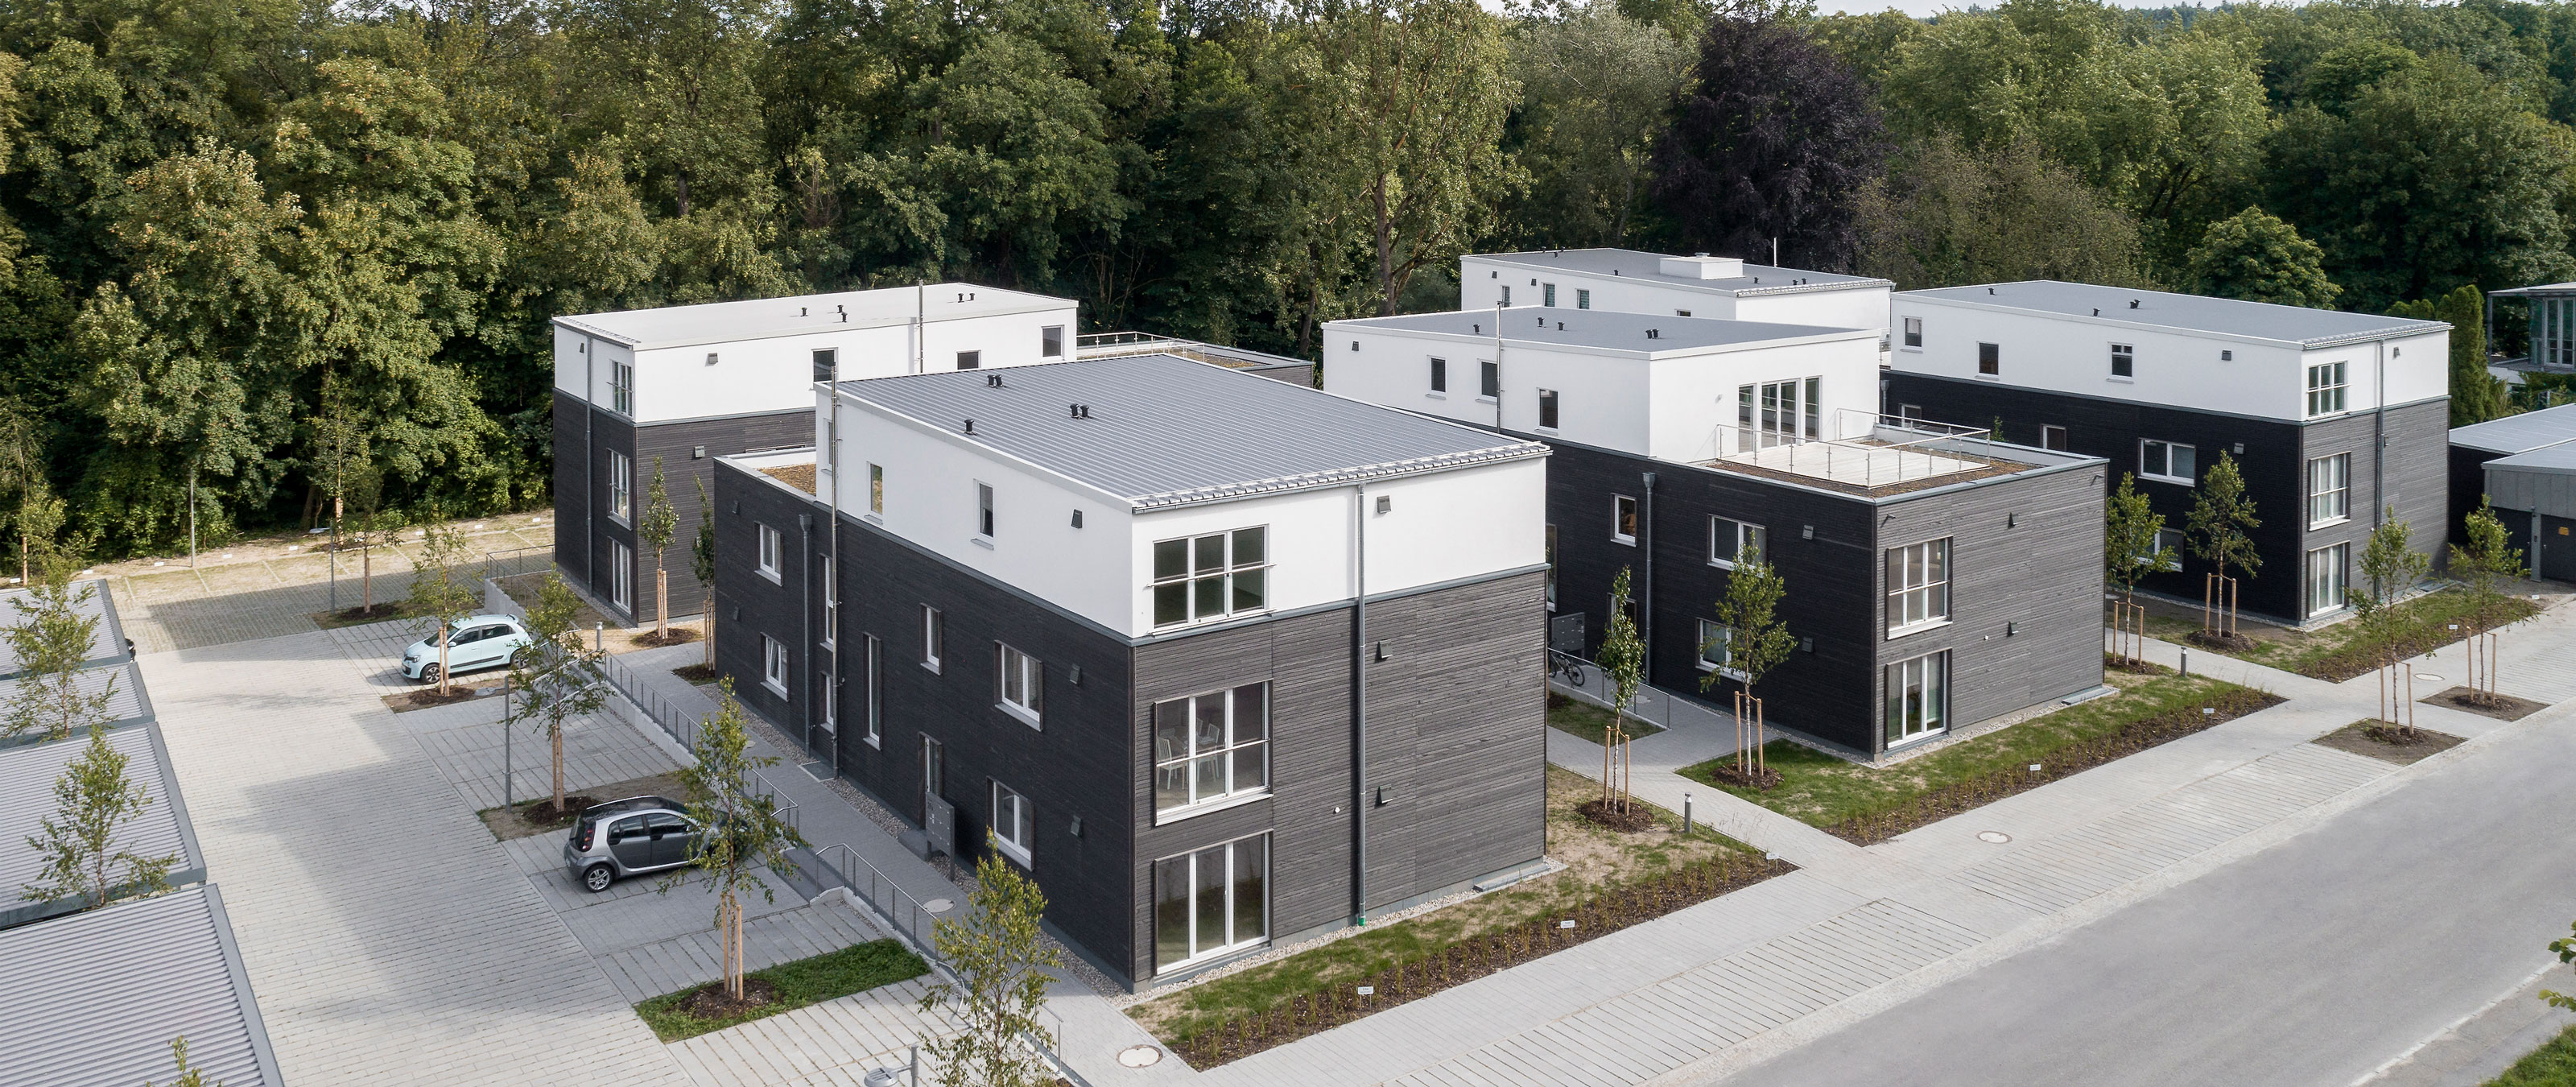 34 moderne Wohnungen verteilt auf 4 Häusern mit vorvergrauter Holzschalung im neugebauten Donau-Wohnpark. Urheber: © Oliver Jaist